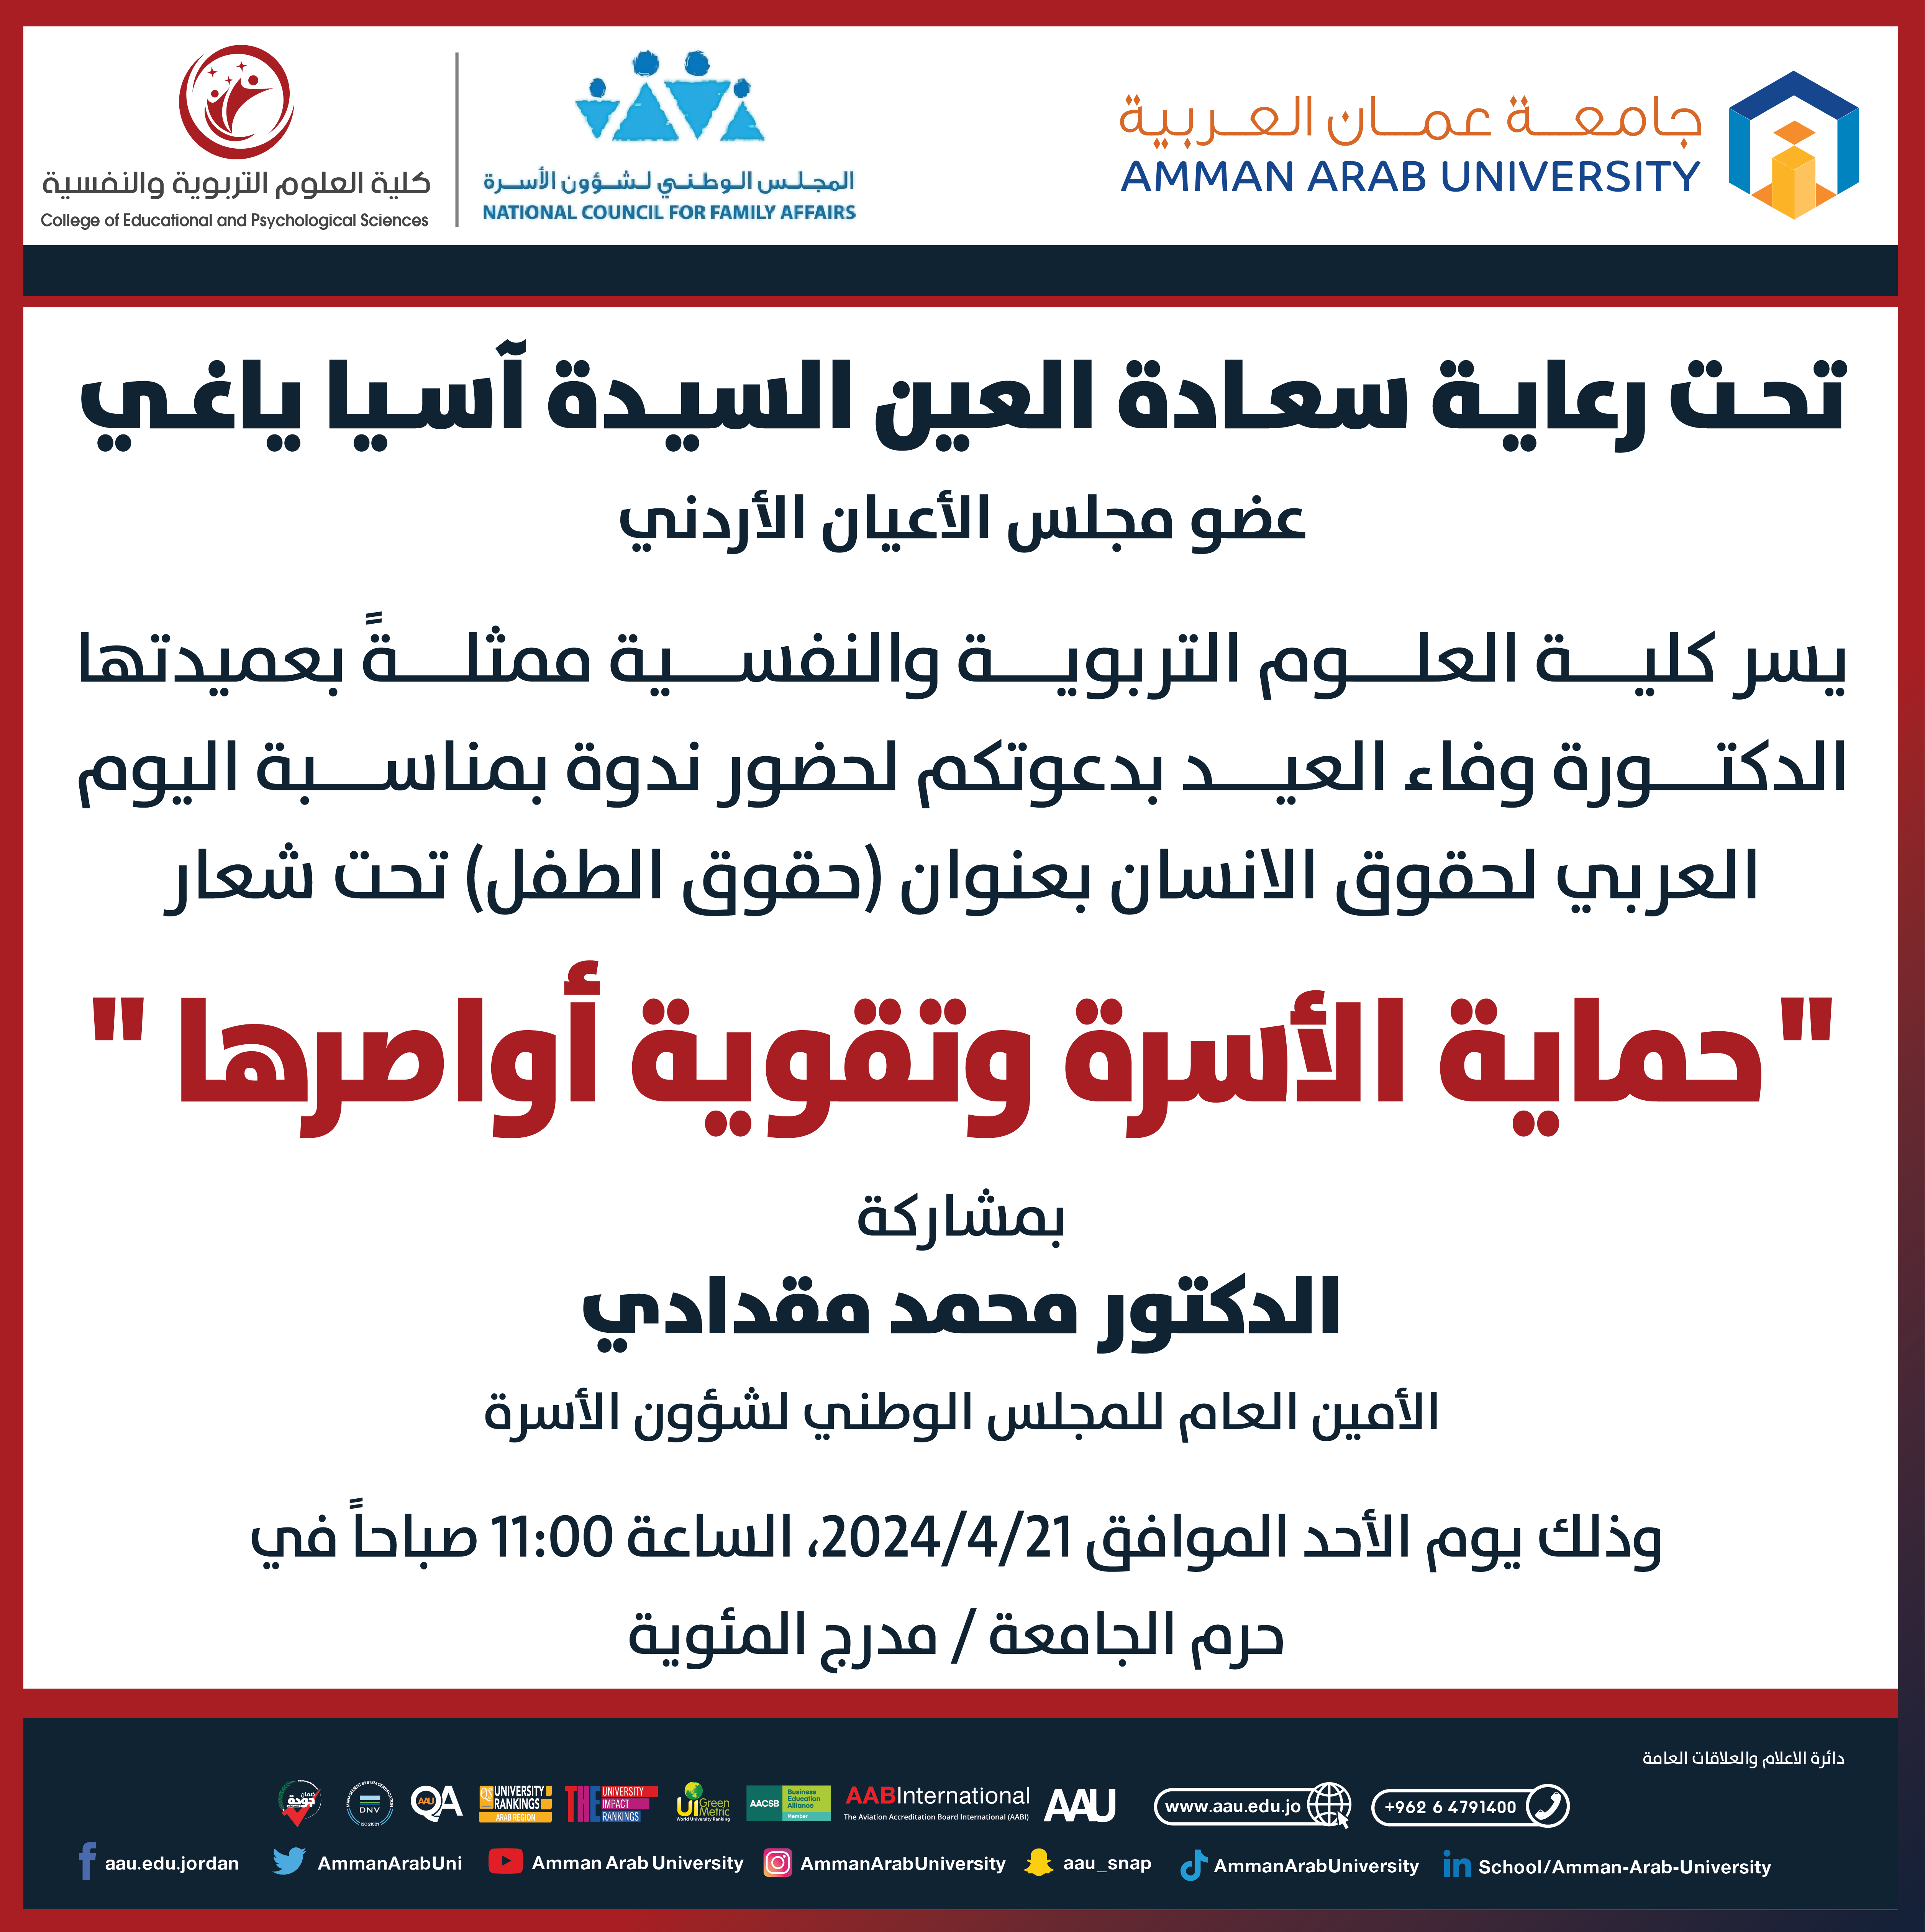 اعلان للطلبة لحضور ندوة بعنوان حماية الأسرة وتقوية أواصرها